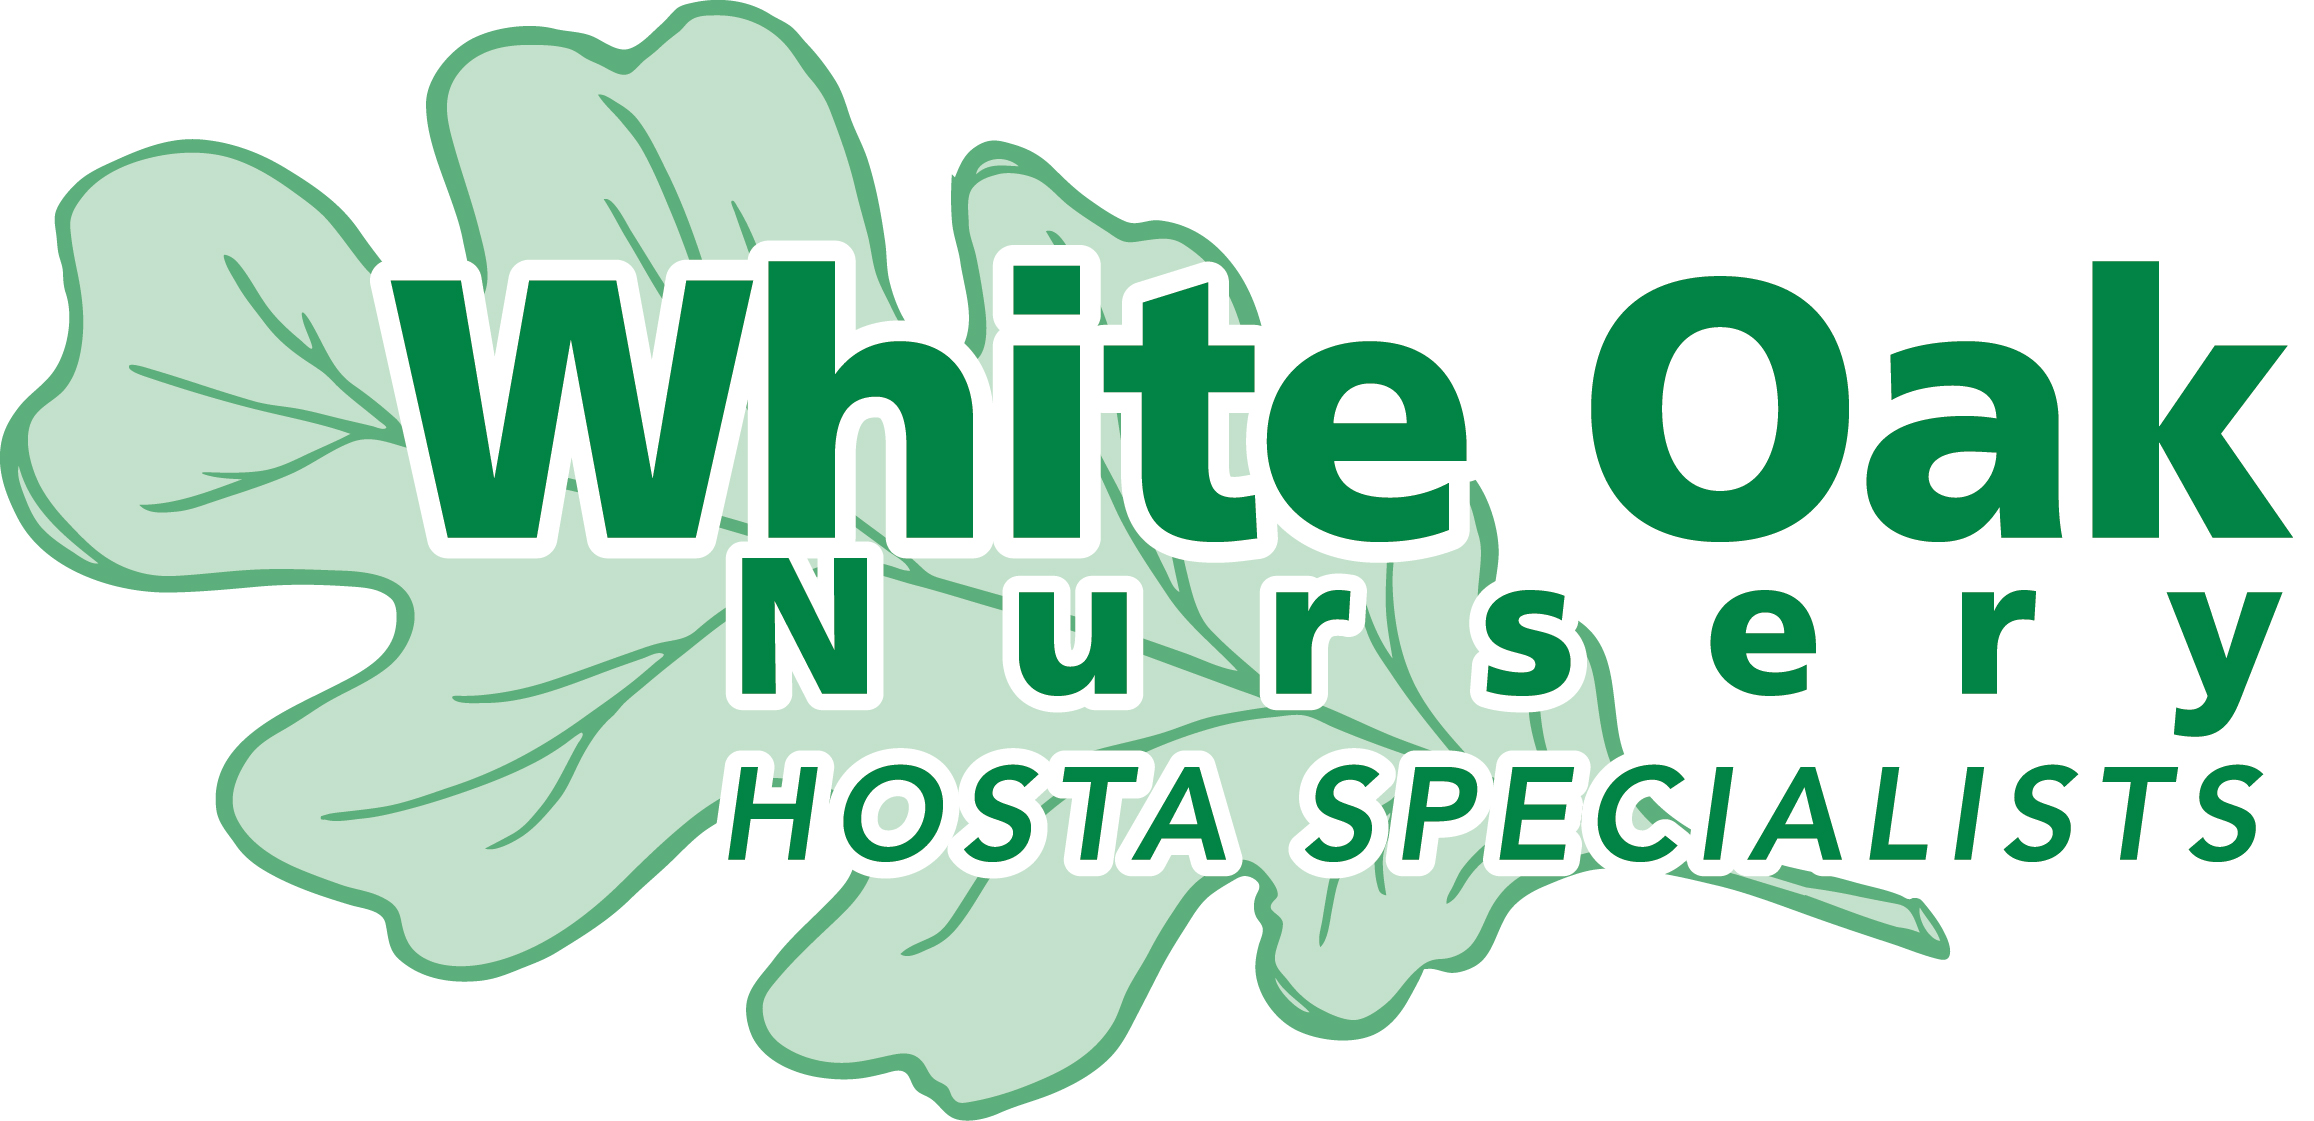 White Oak Nursery'